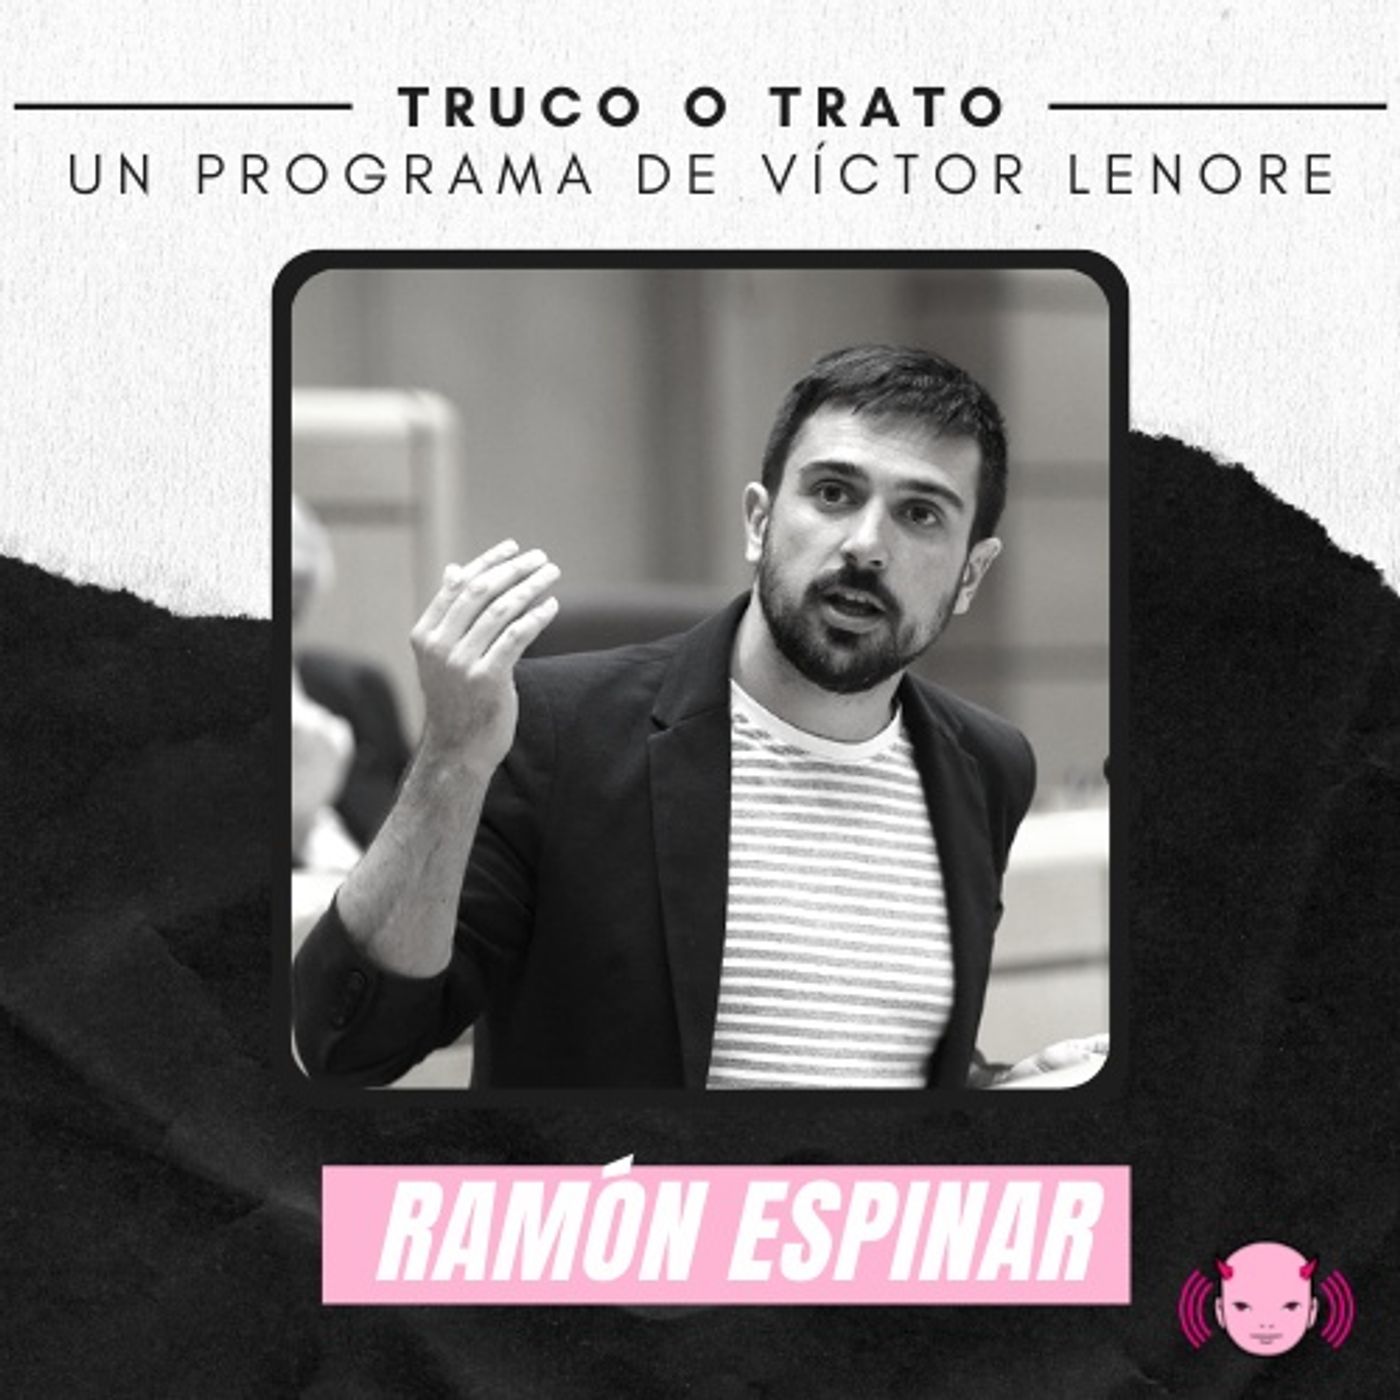 Truco o trato con Victor Lenore #16: Ramón Espinar